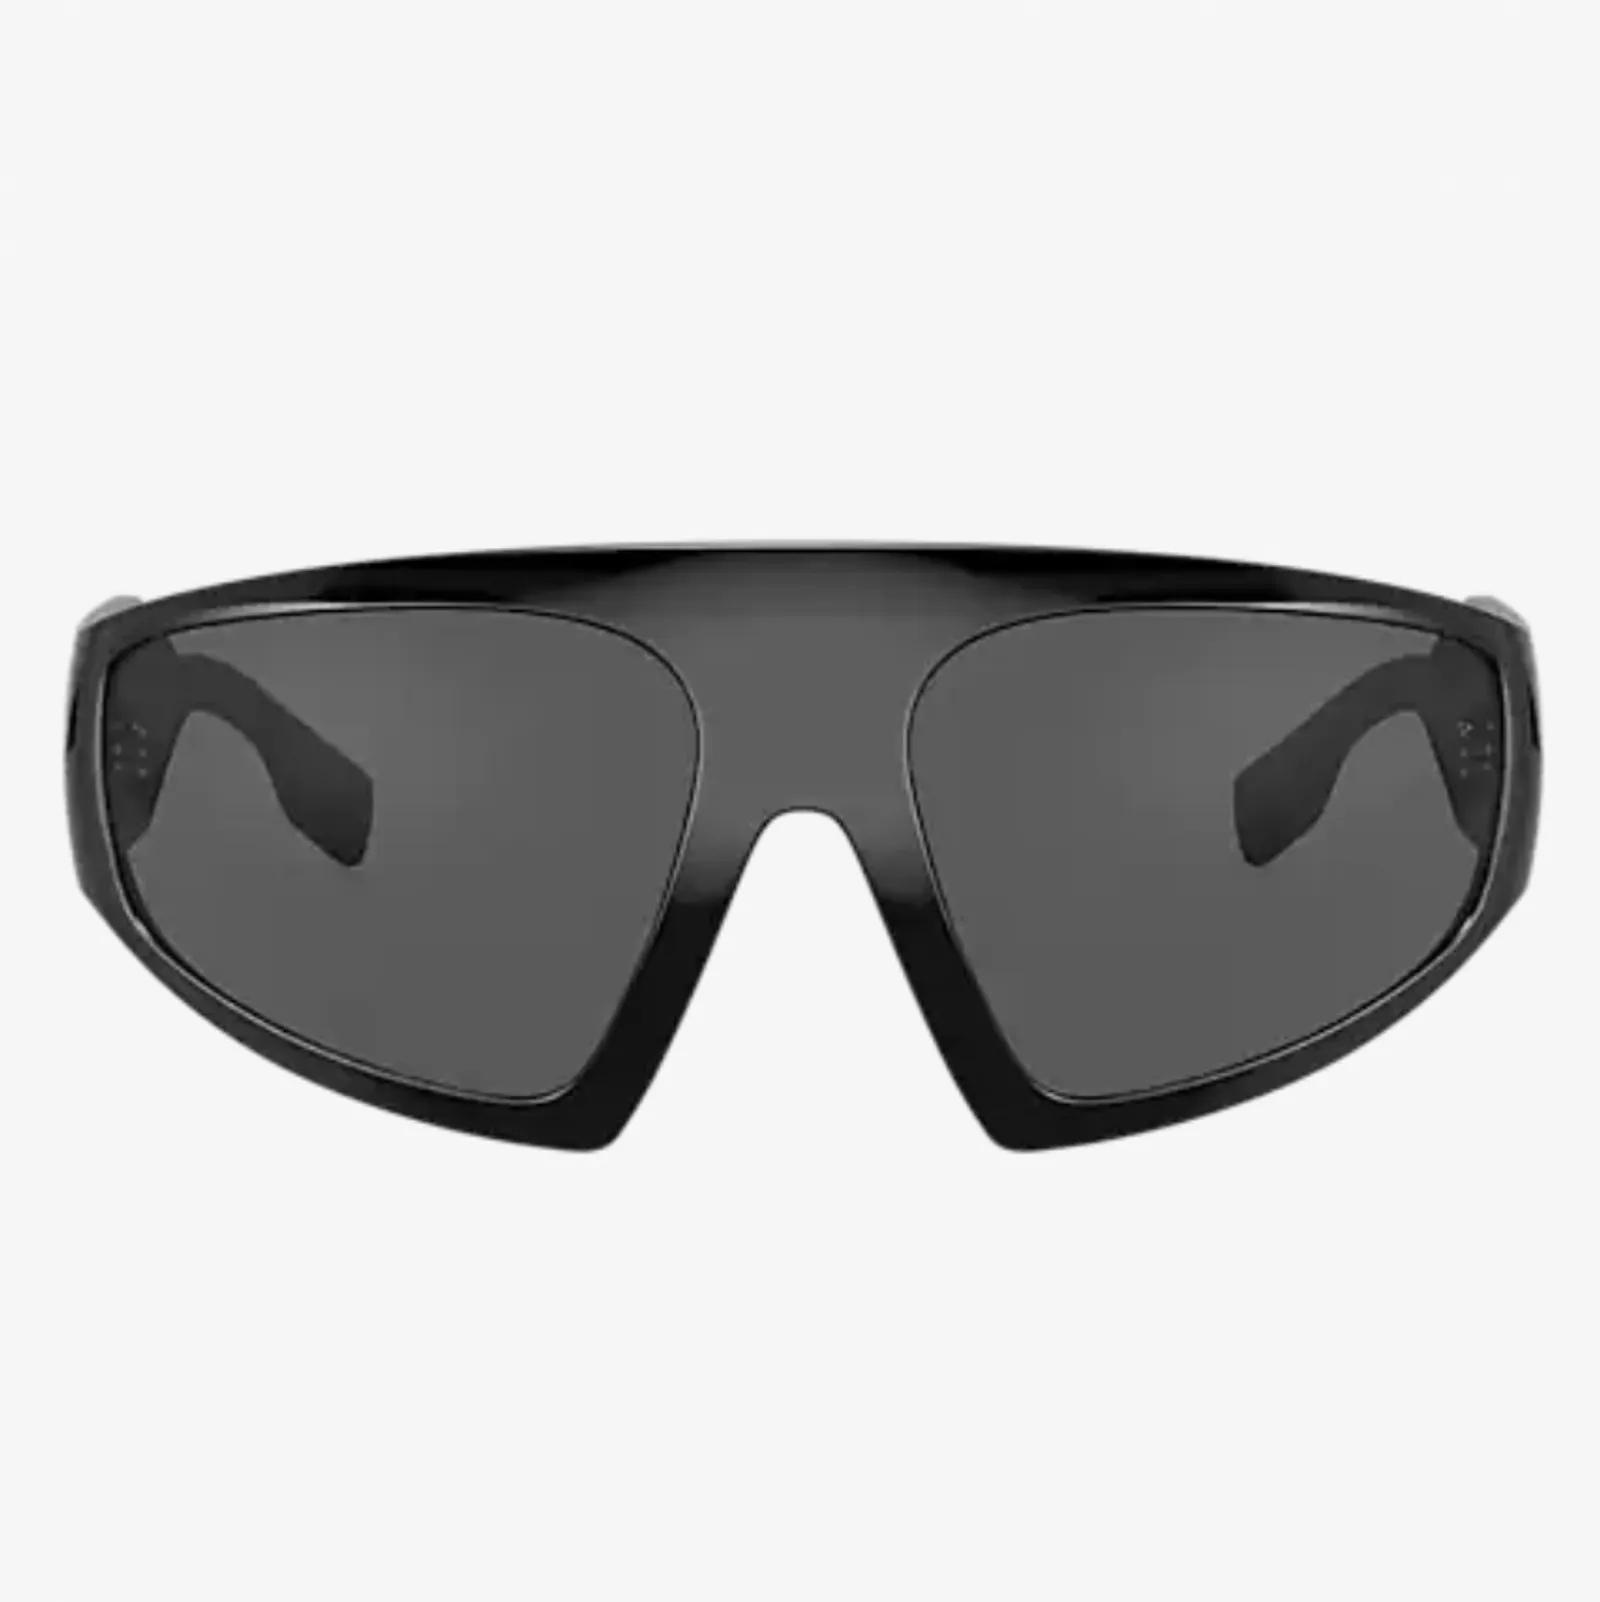 #PopbelaOOTD: Saatnya Tampil Beda dengan Sunglasses Ini!